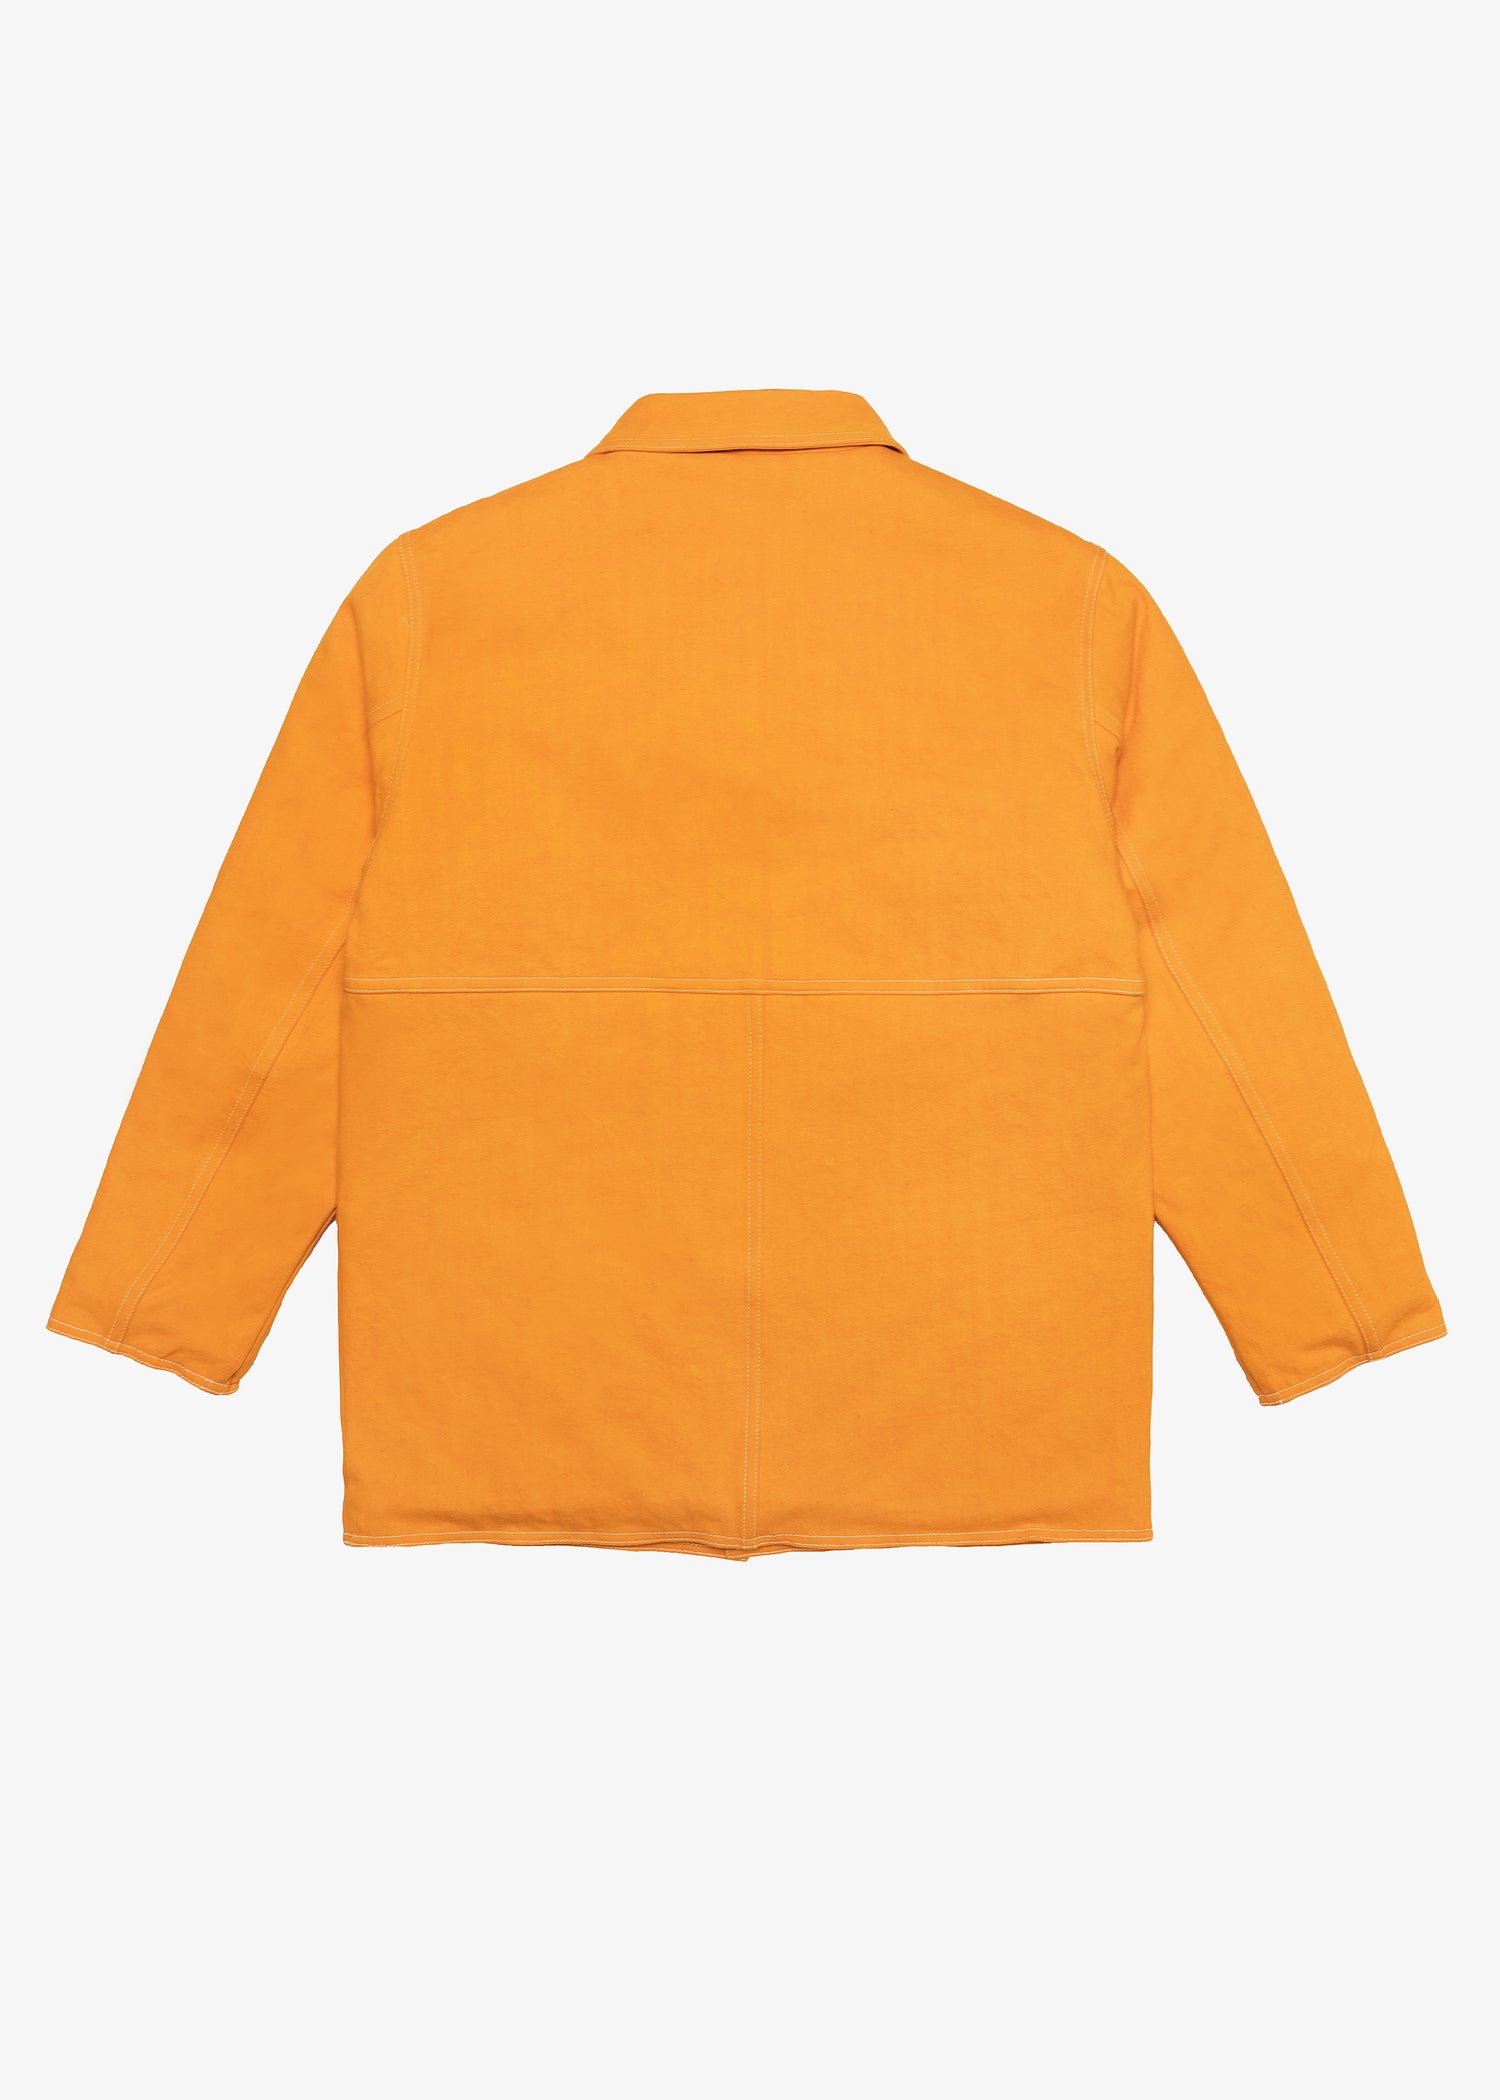 Oxnard Chore Coat - Orange